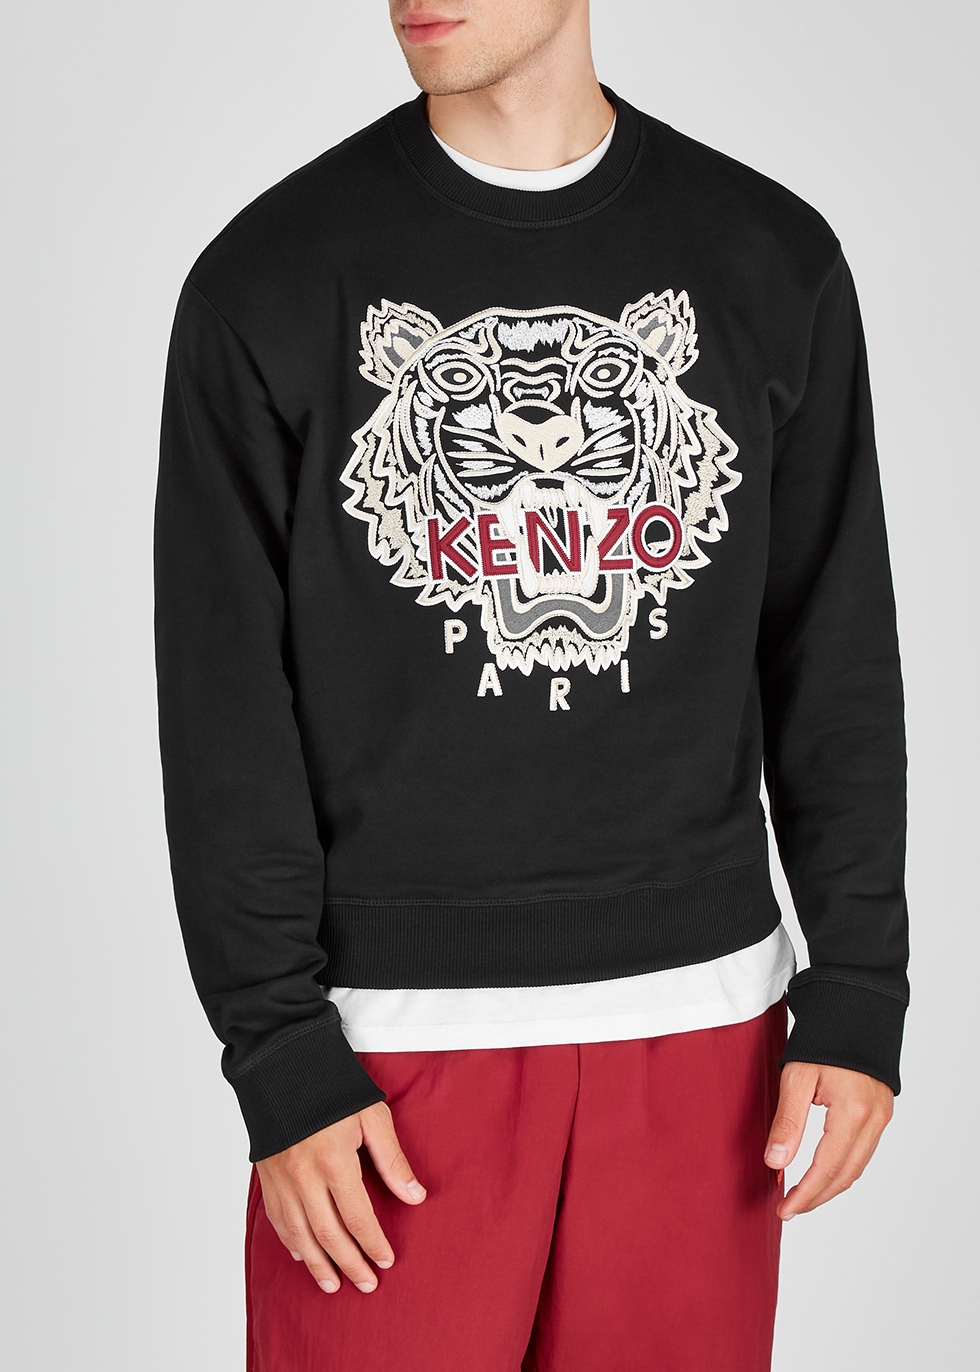 kenzo sweatshirt all black